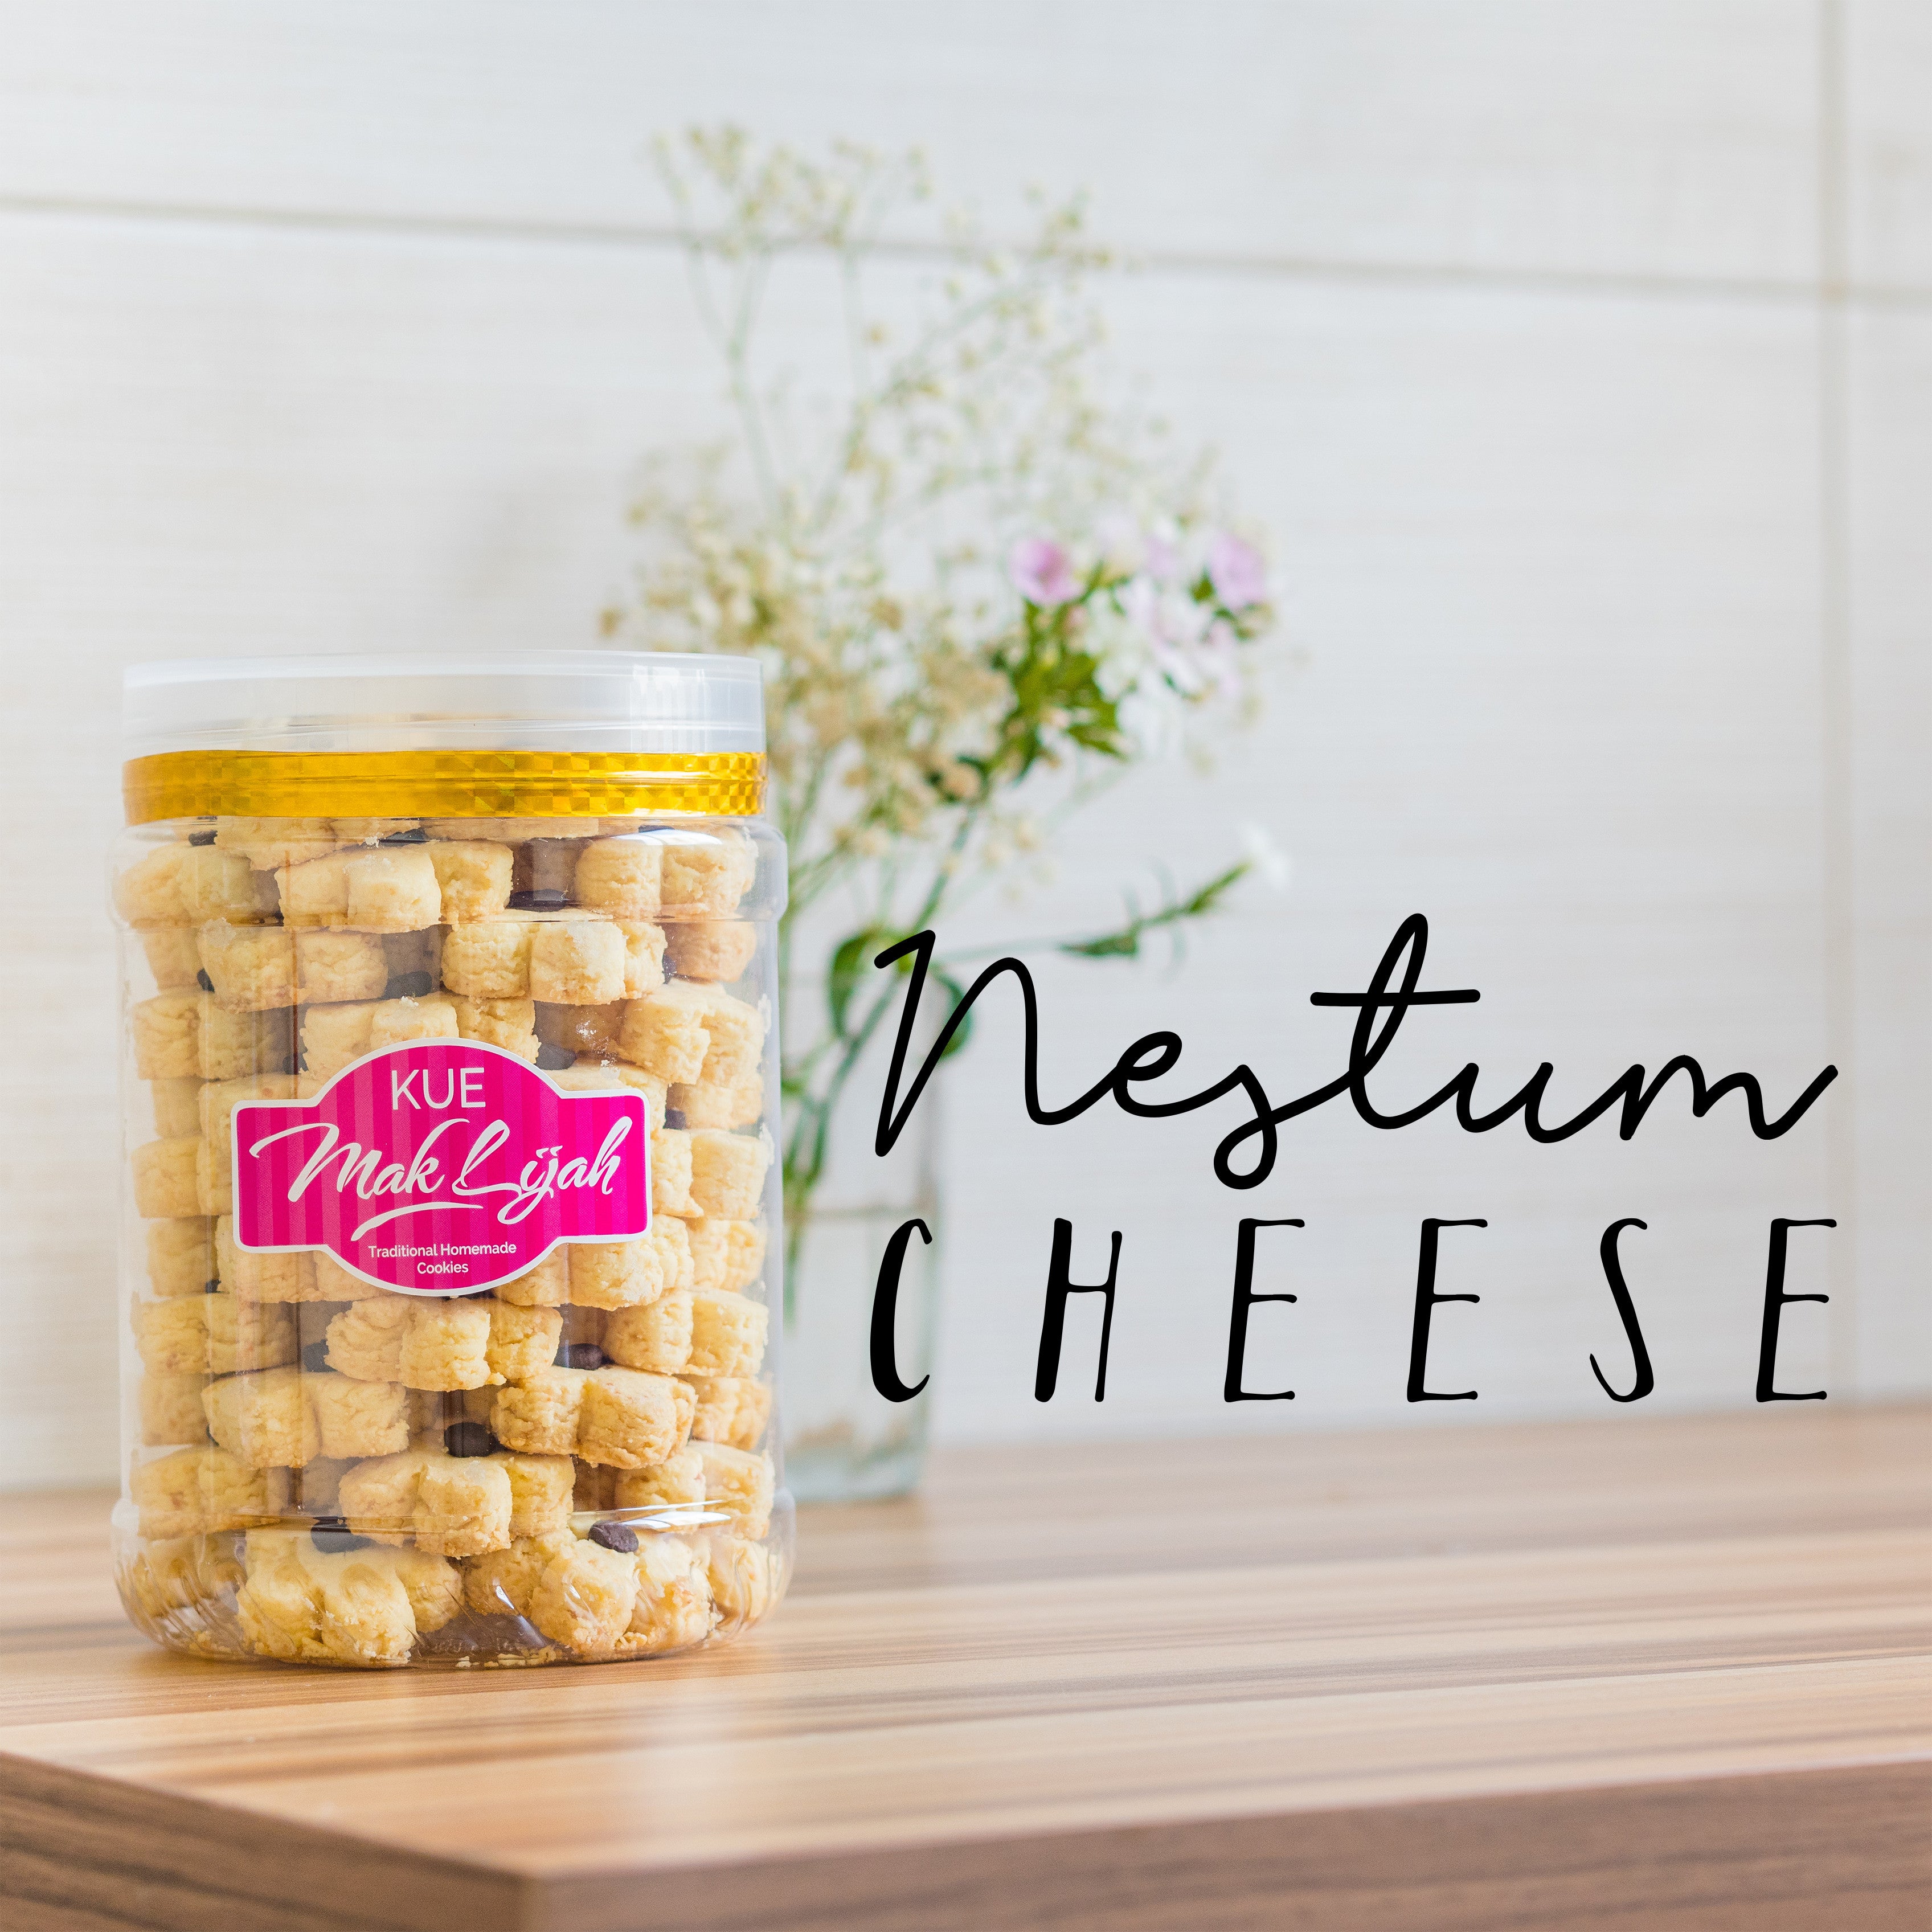 Maklijah, Kueh Nestum Cheese, 500 g